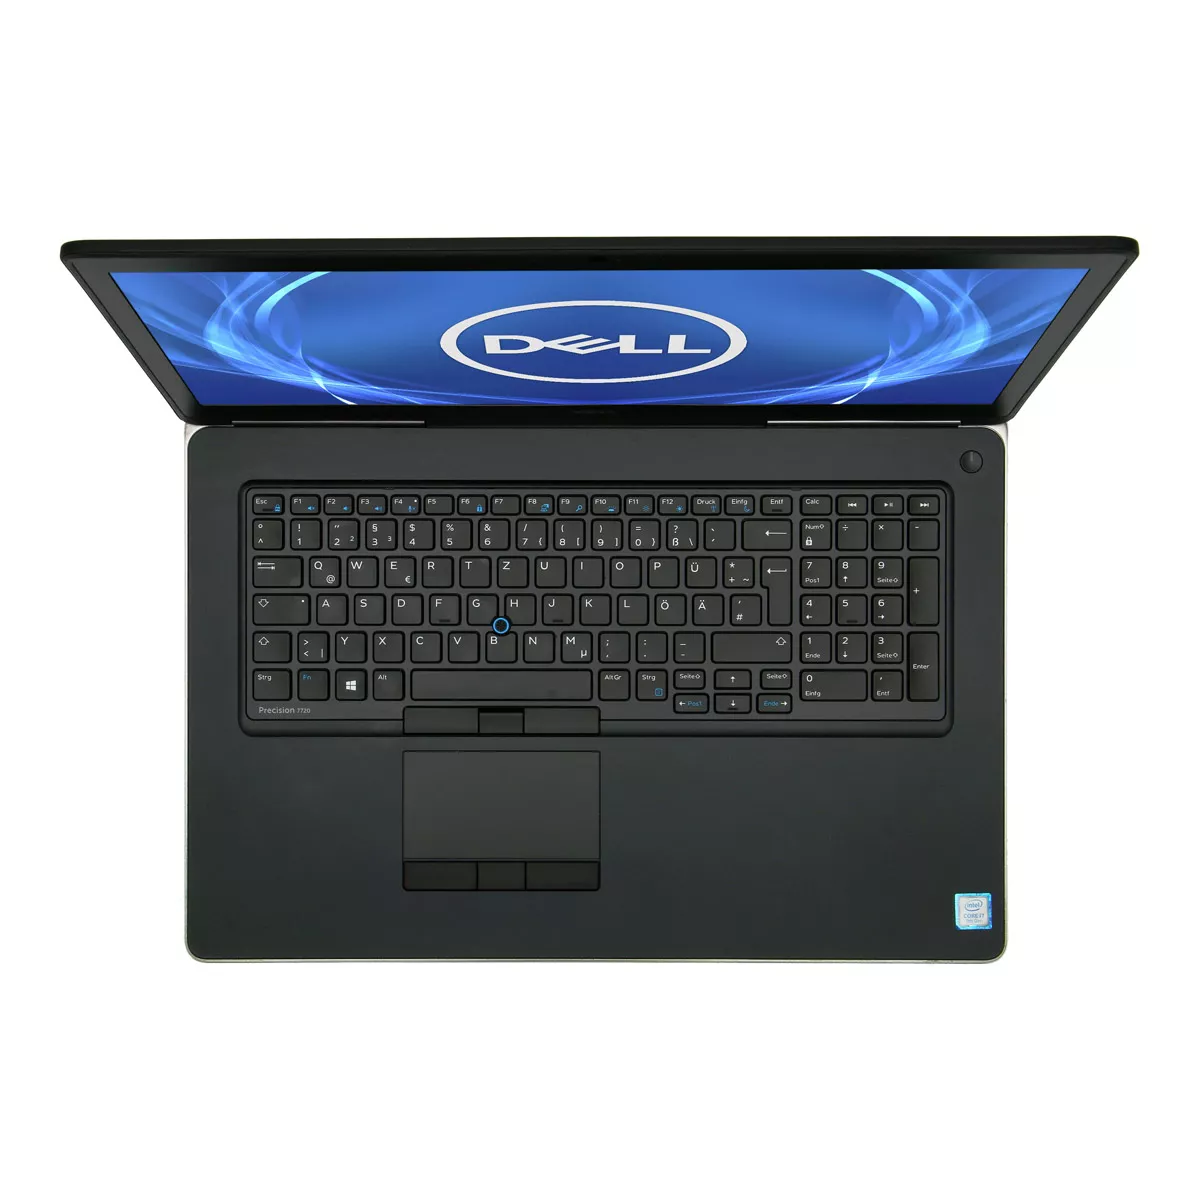 Dell Precision 7720 Core i7 7920HQ Full-HD nVidia Quadro M1200M 4,0 GB 500 GB M.2 SSD Webcam A+